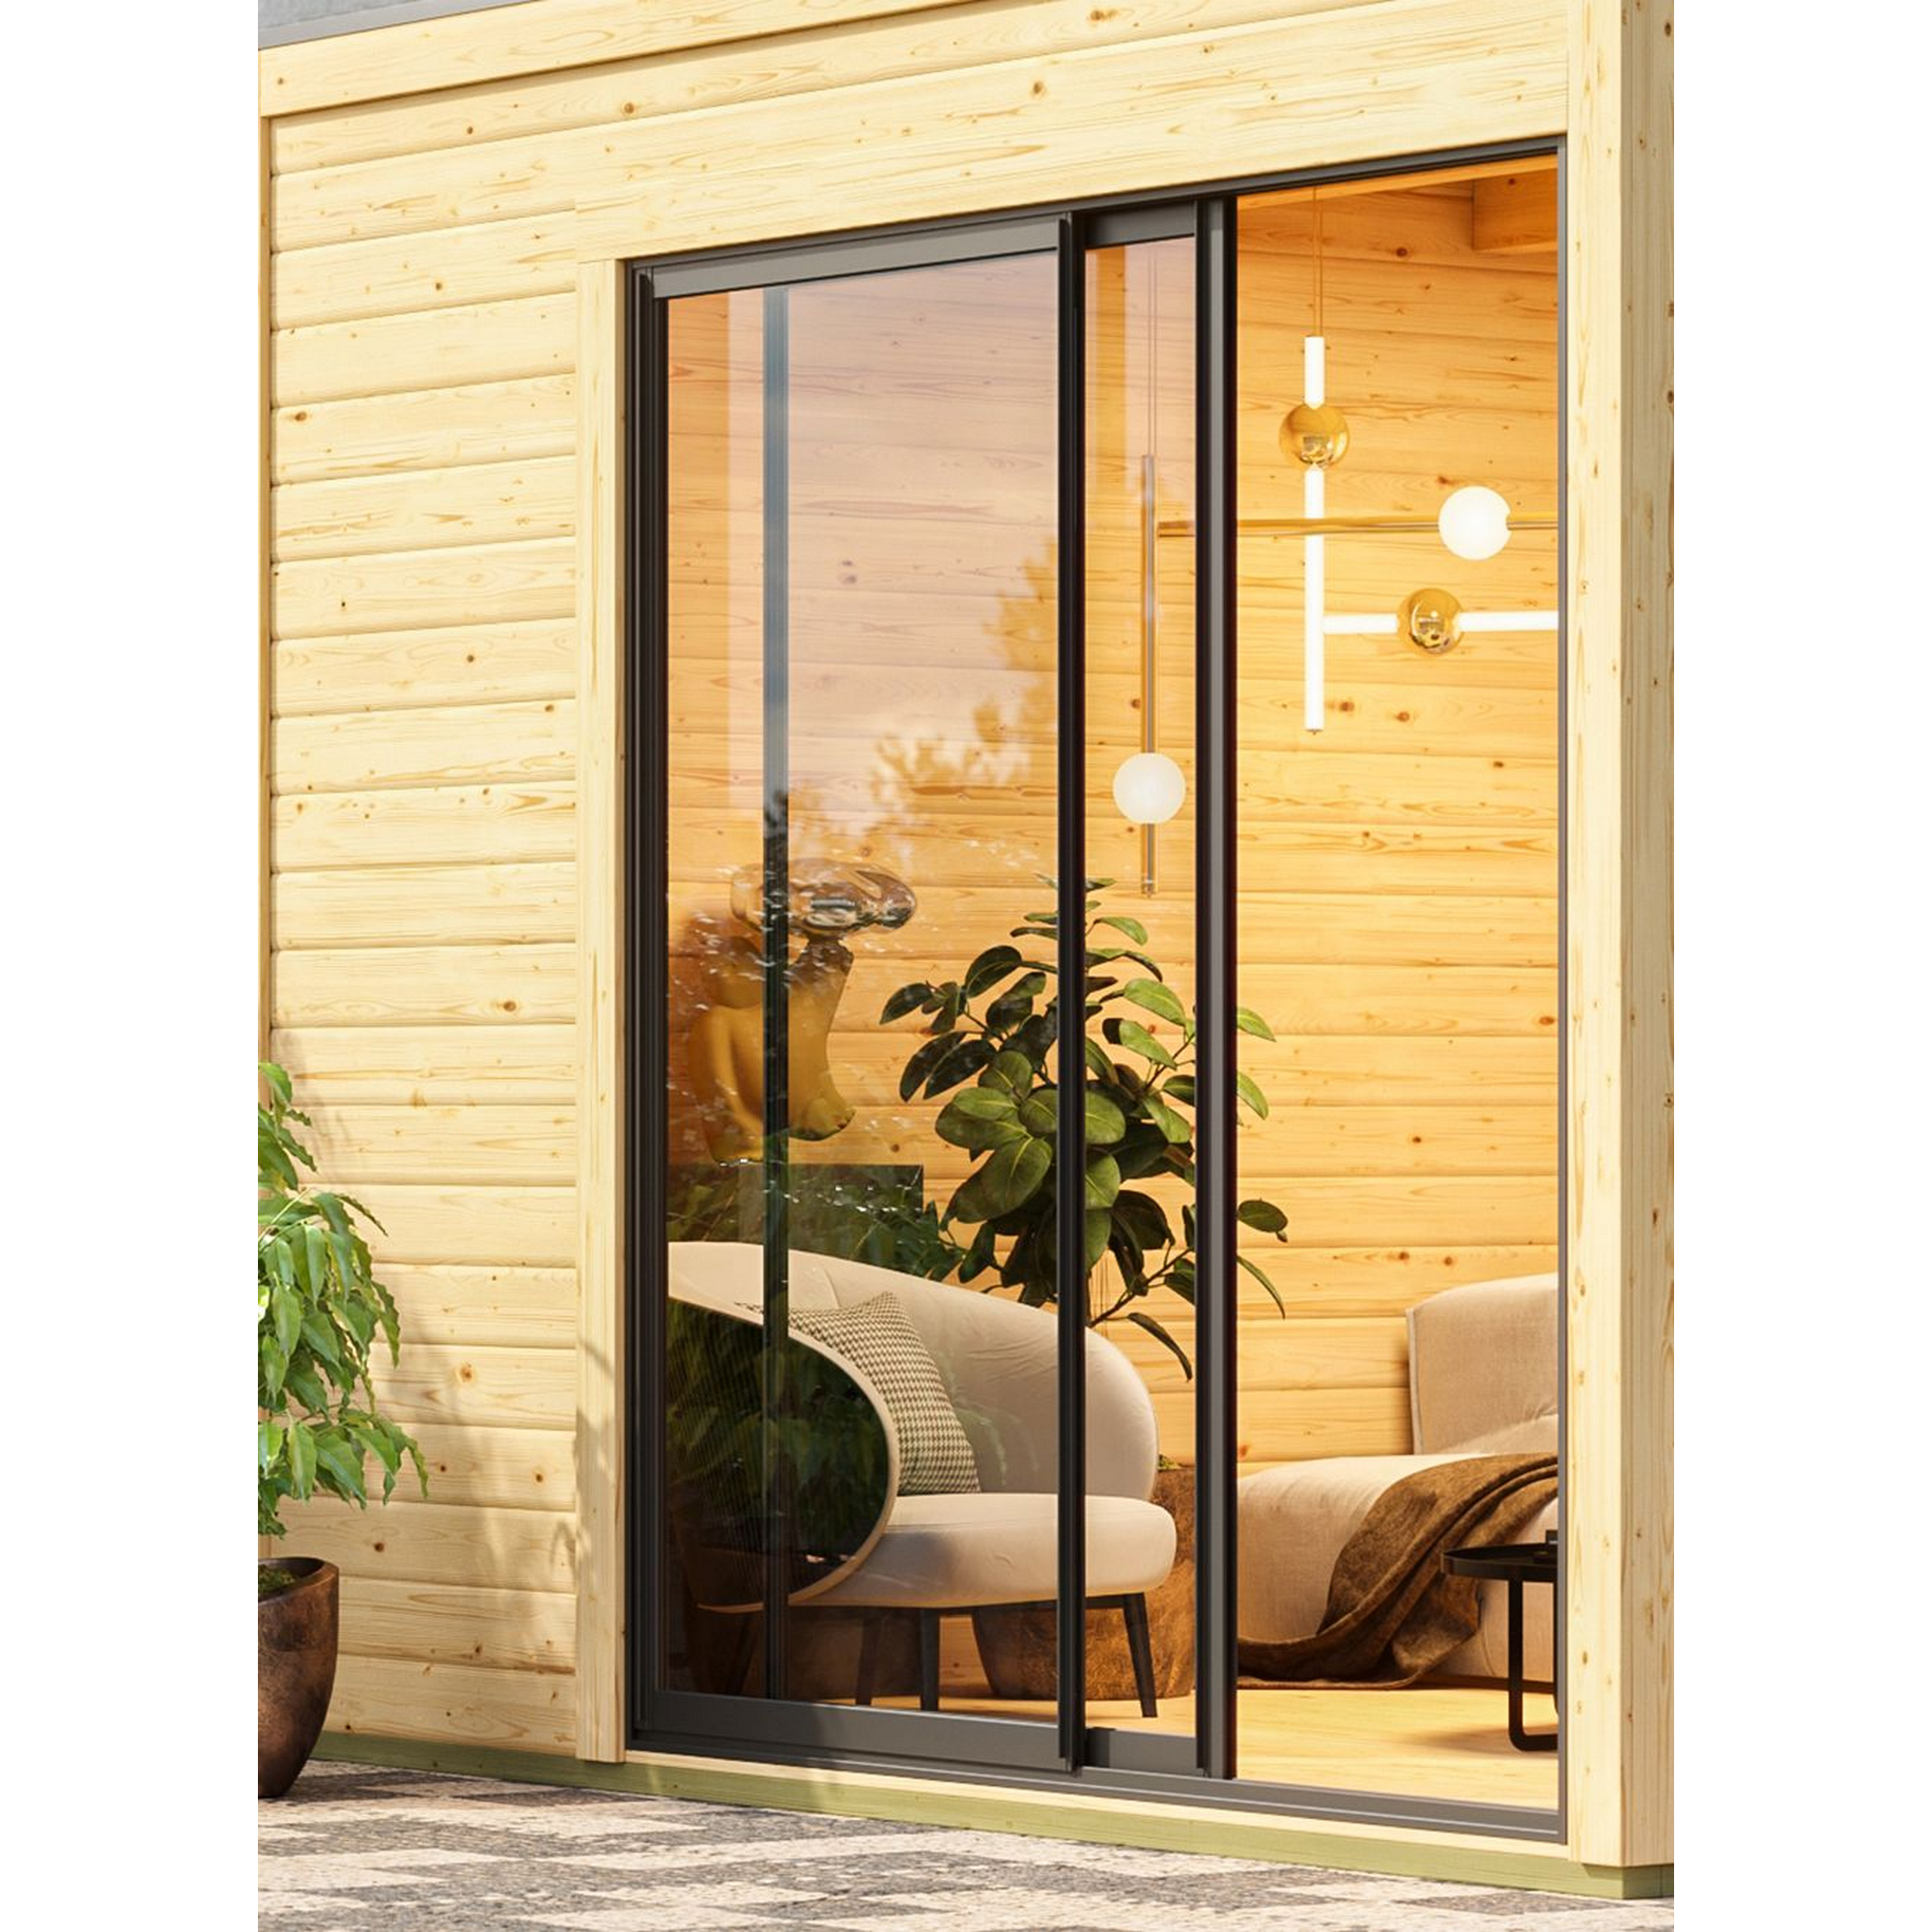 Gartenhaus mit Sauna 'Enrique 1 Variante B' anthrazit 9 kW Bio-Ofen externe Steuerung 308 x 308 x 242 cm + product picture